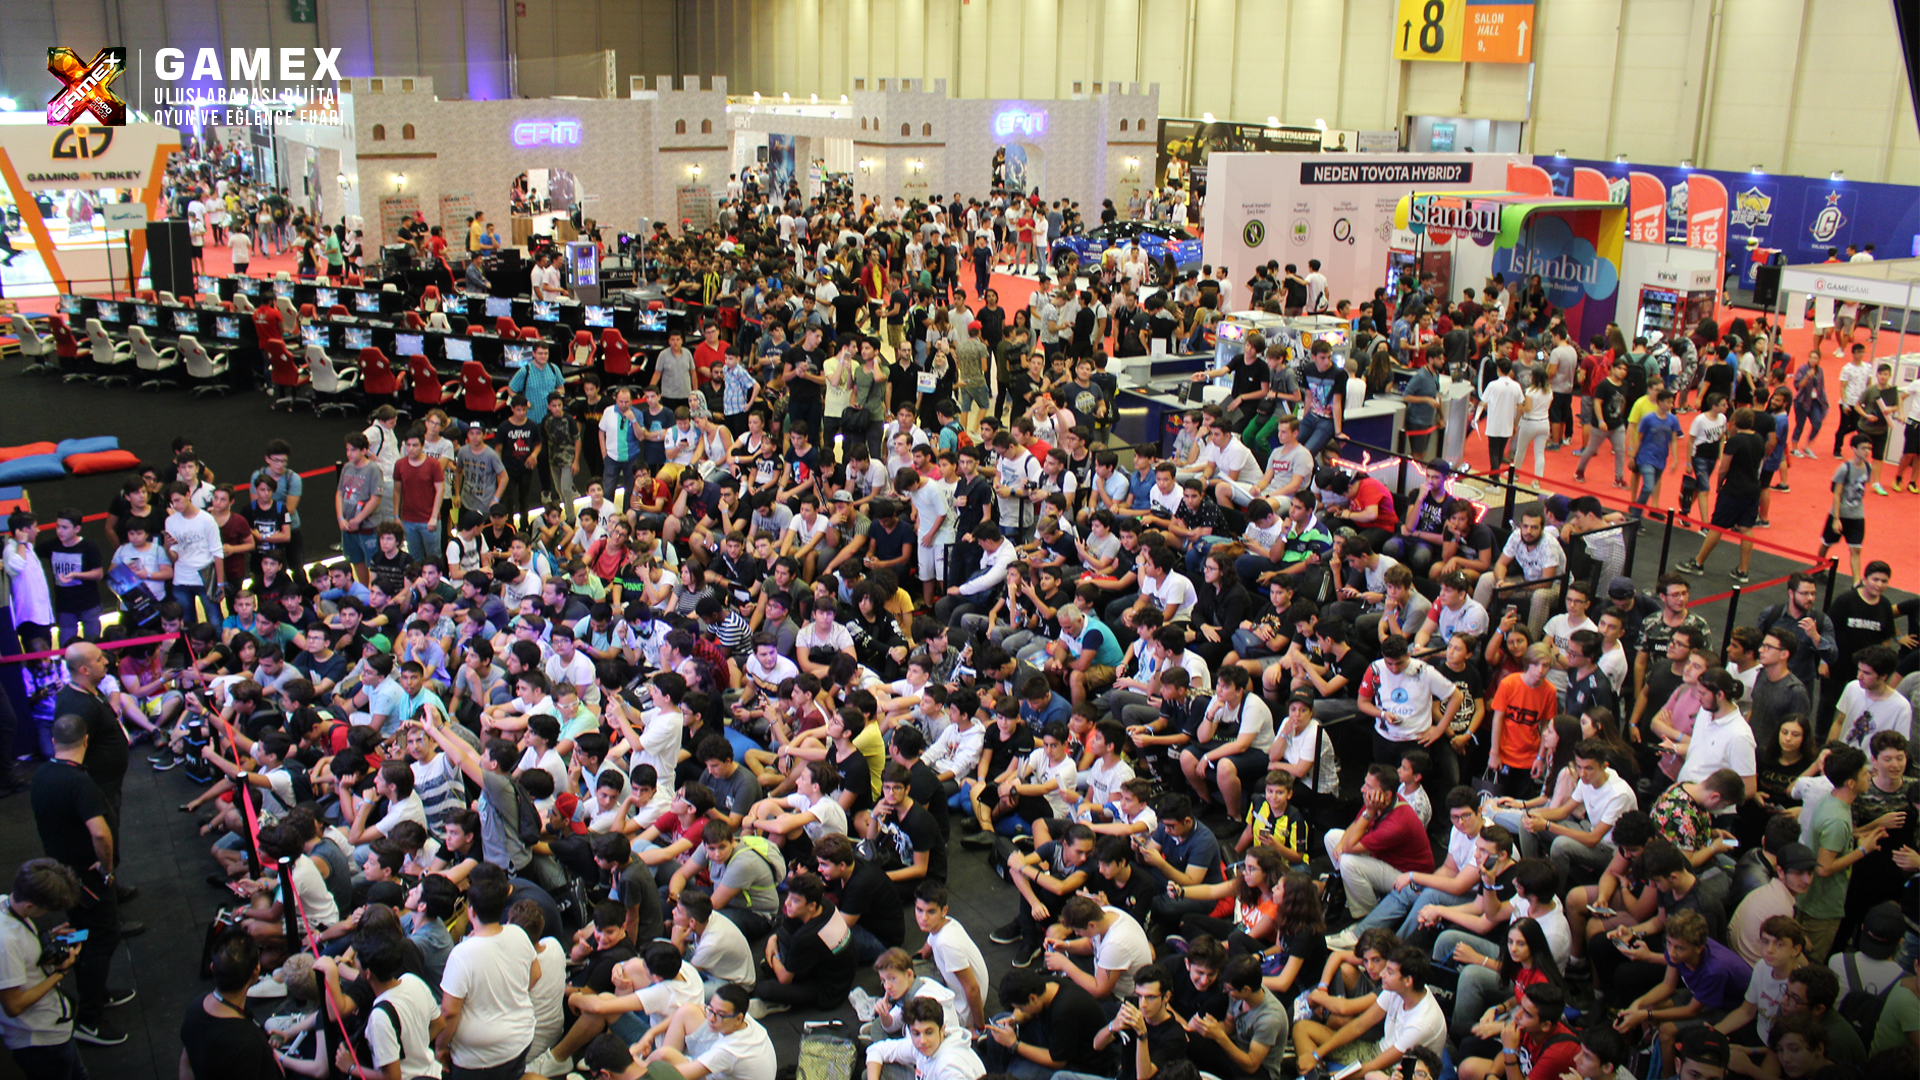 gamex 2022 では、19 月 22 日から XNUMX 日までイスタンブールでゲーム愛好家が集まります。